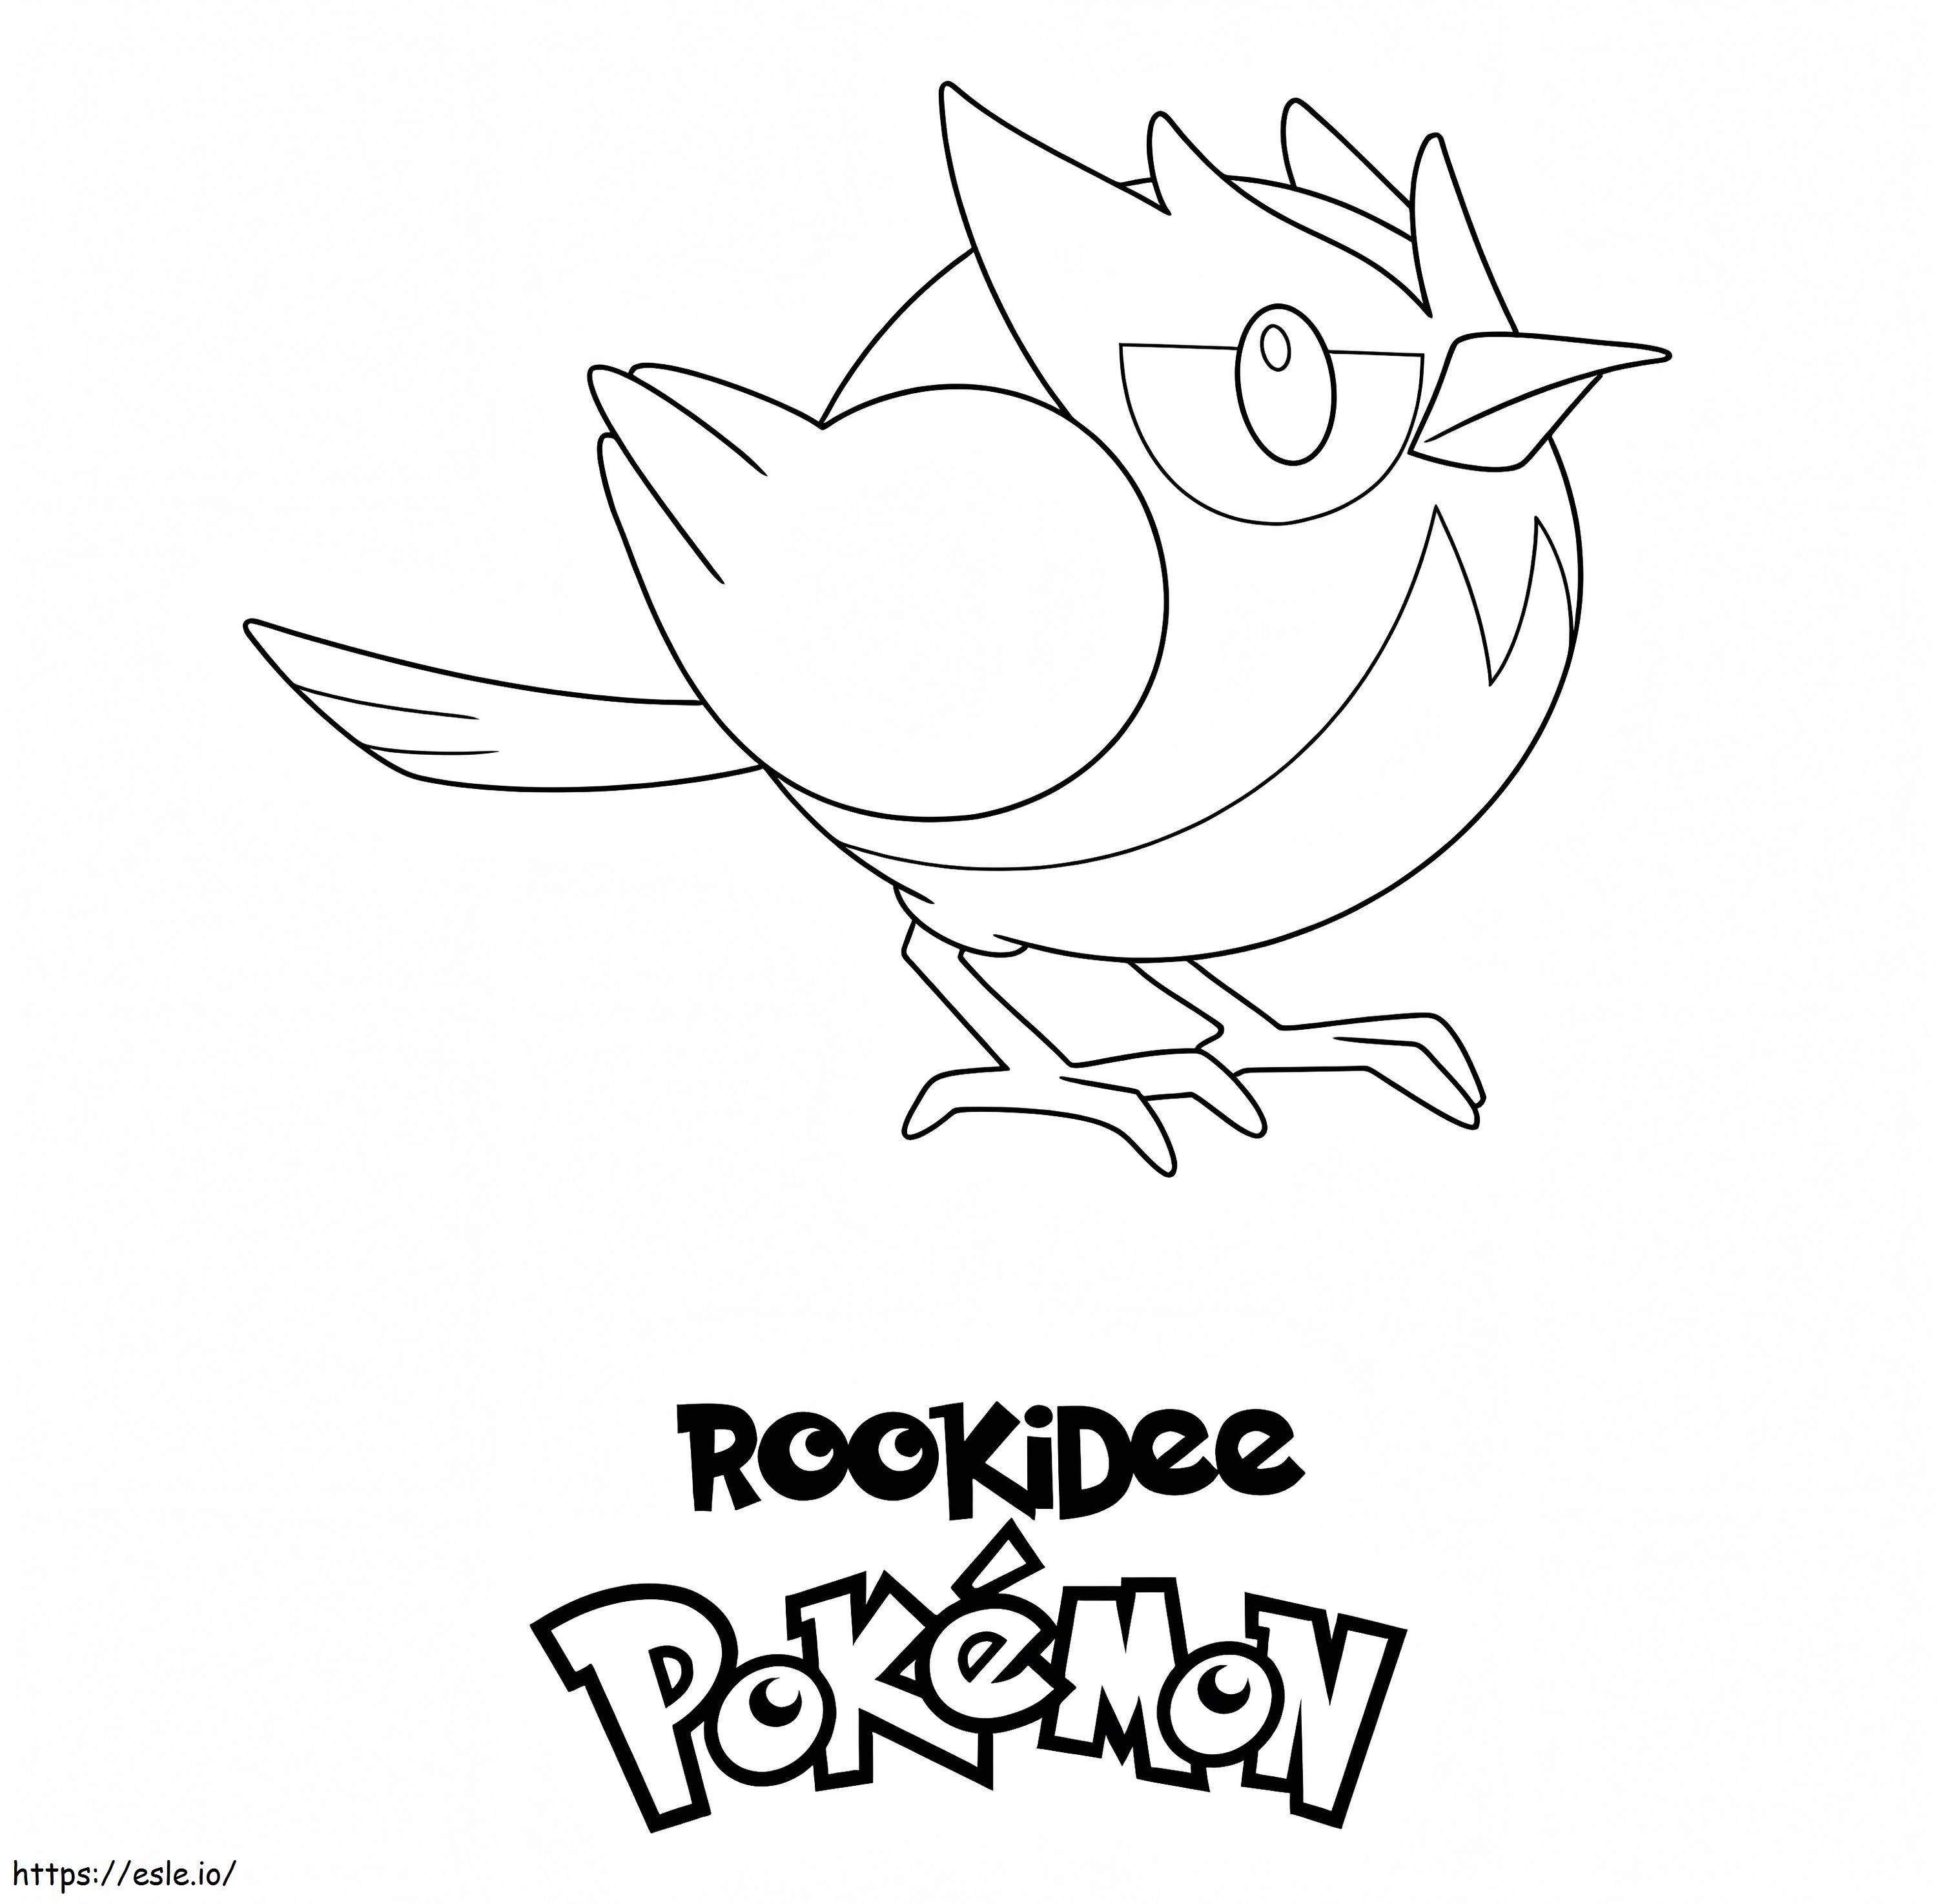 Pokémon Rookiedee para colorear